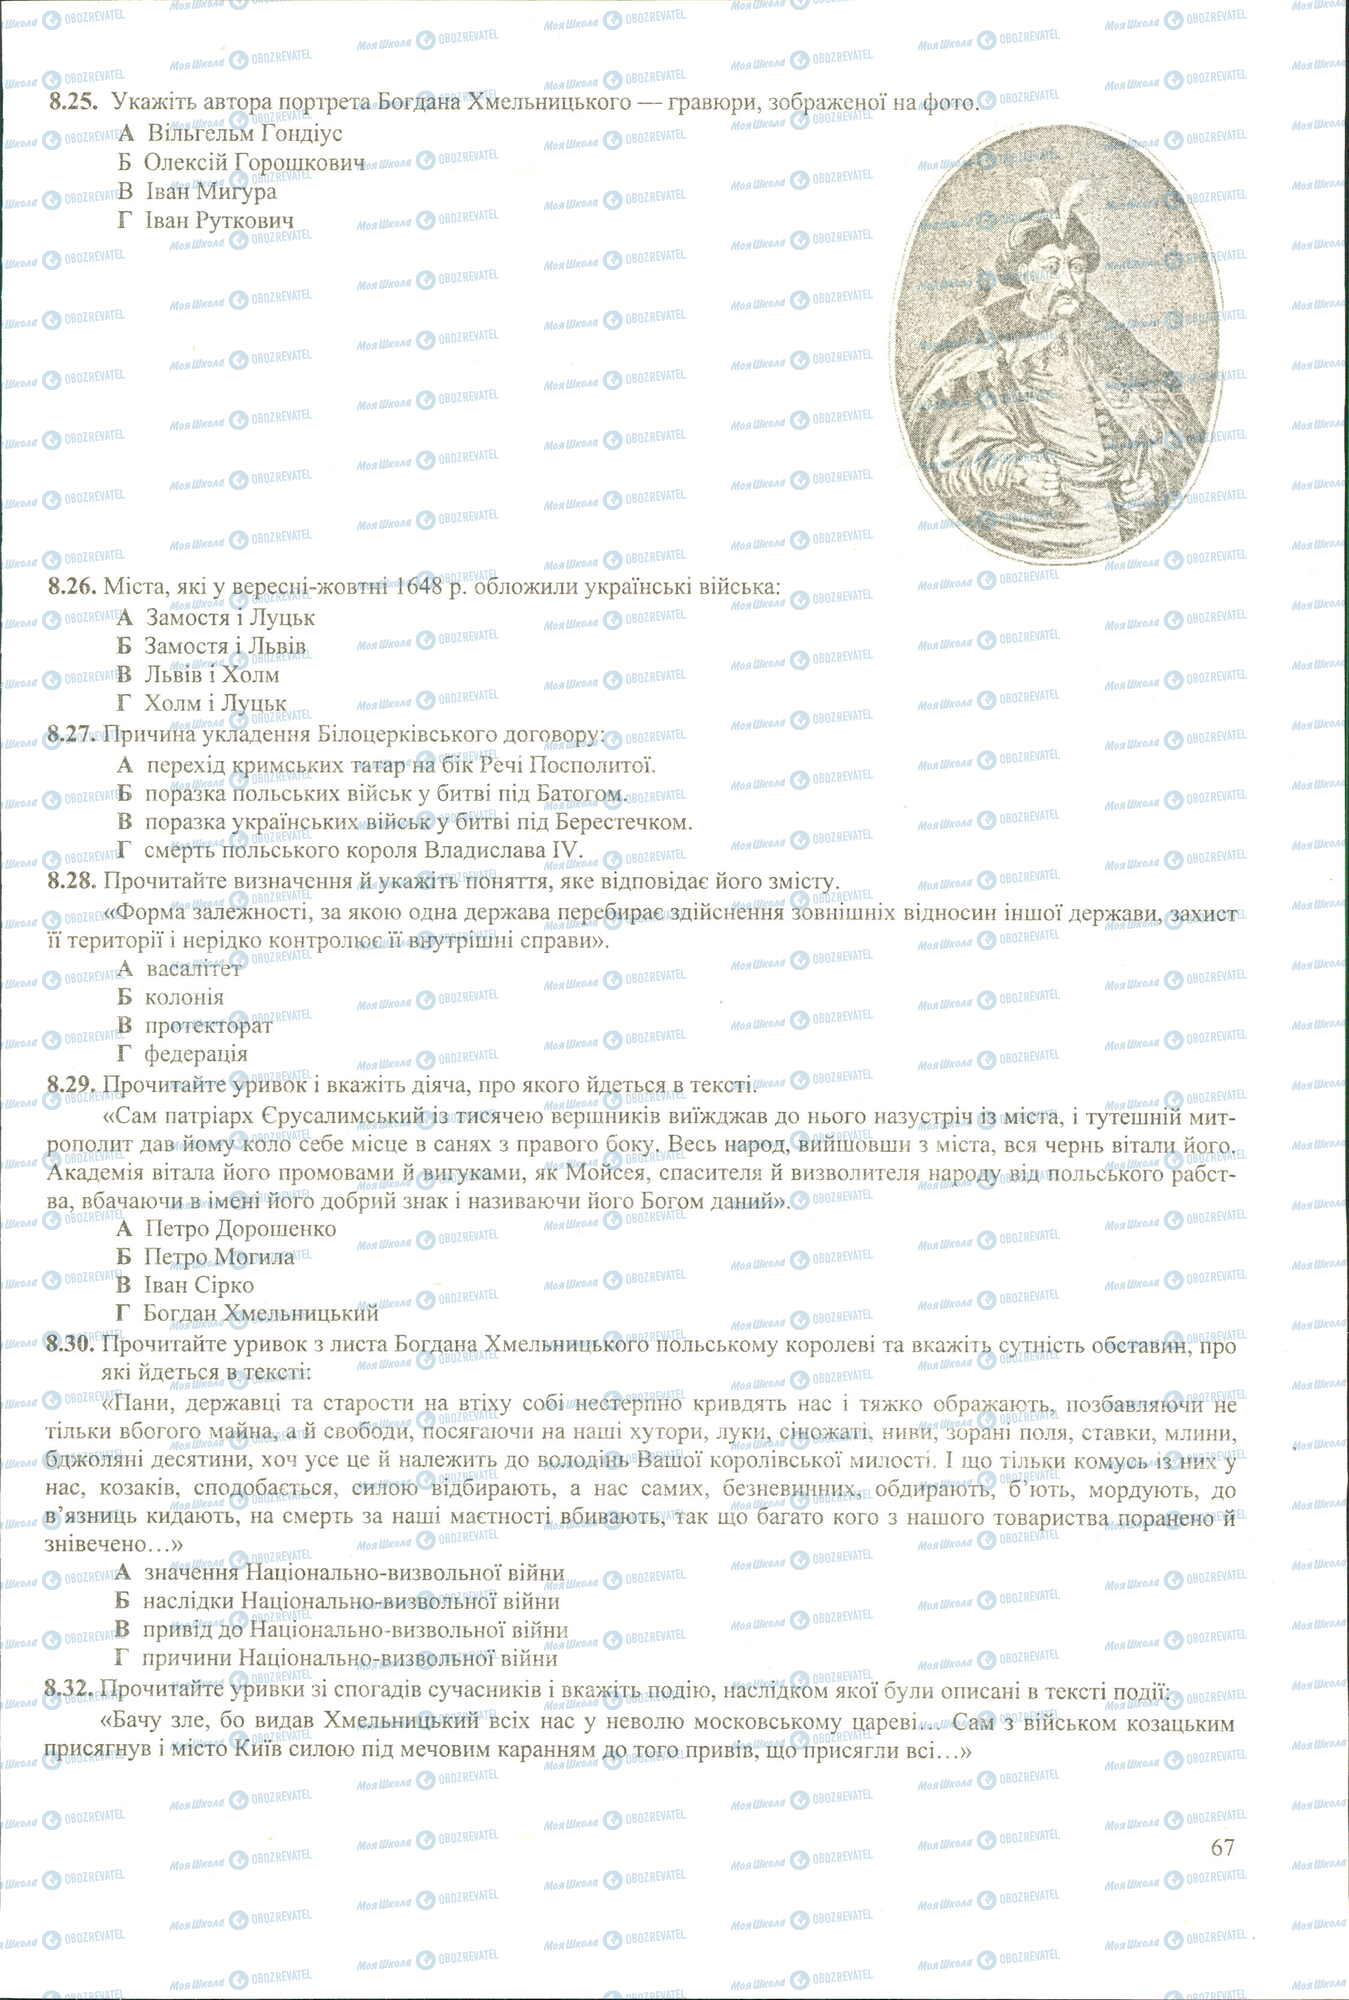 ЗНО История Украины 11 класс страница 8.25-8.32